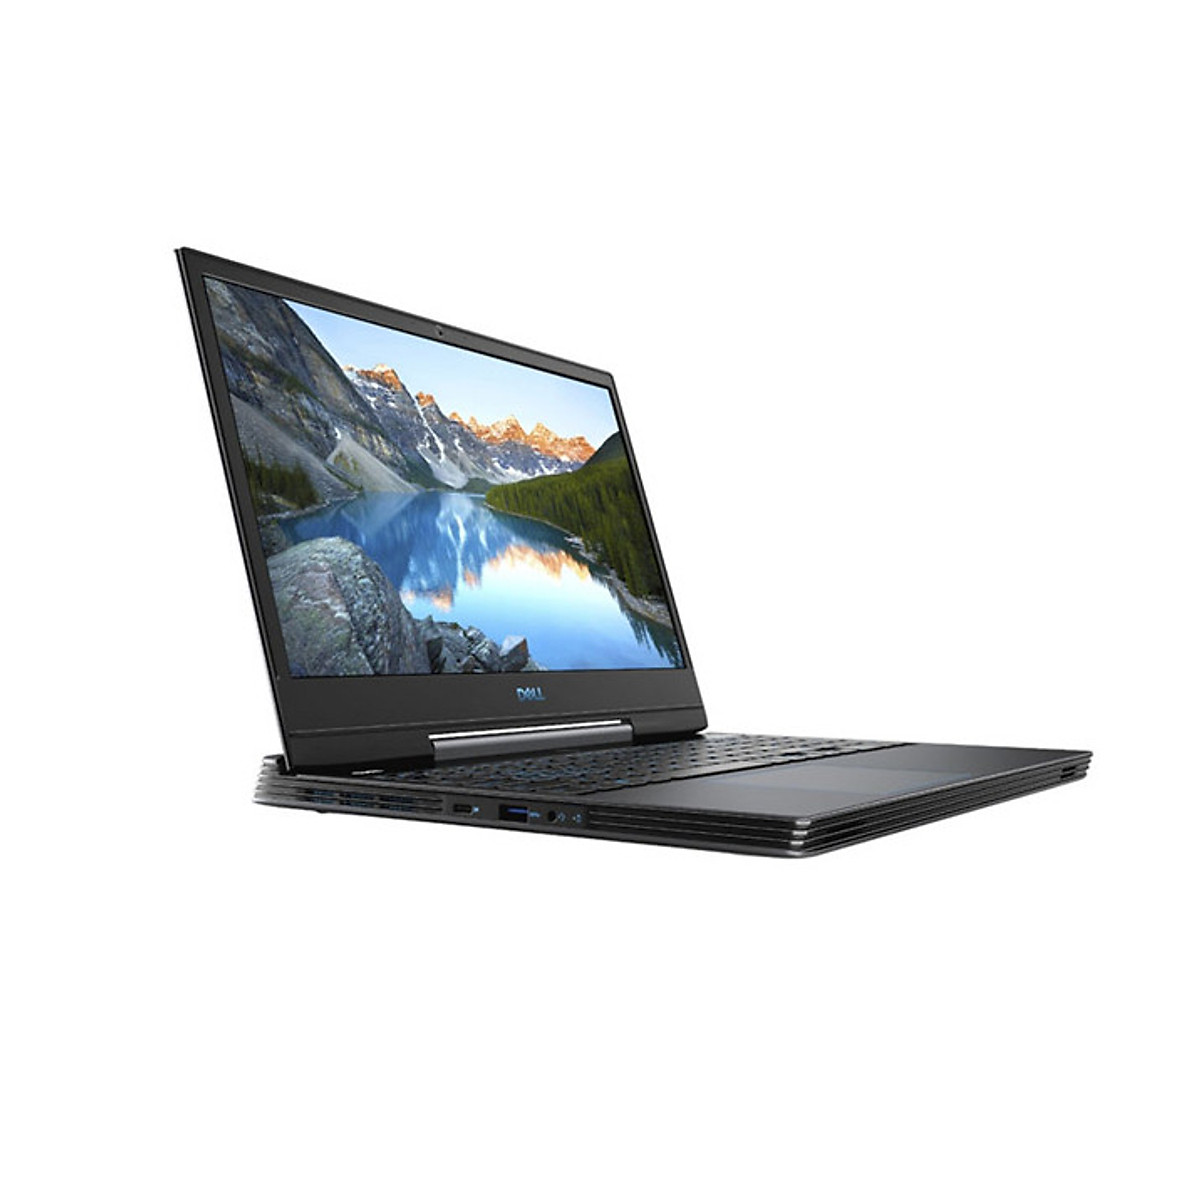 Mua Laptop Dell G5 5590 : i7-8750H | 8GB RAM | 128GB SSD + 1TB HDD | RTX  2060 6GB + UHD Graphics 630  FHD 60hz | Win 10 | Finger - hàng nhập  khẩu